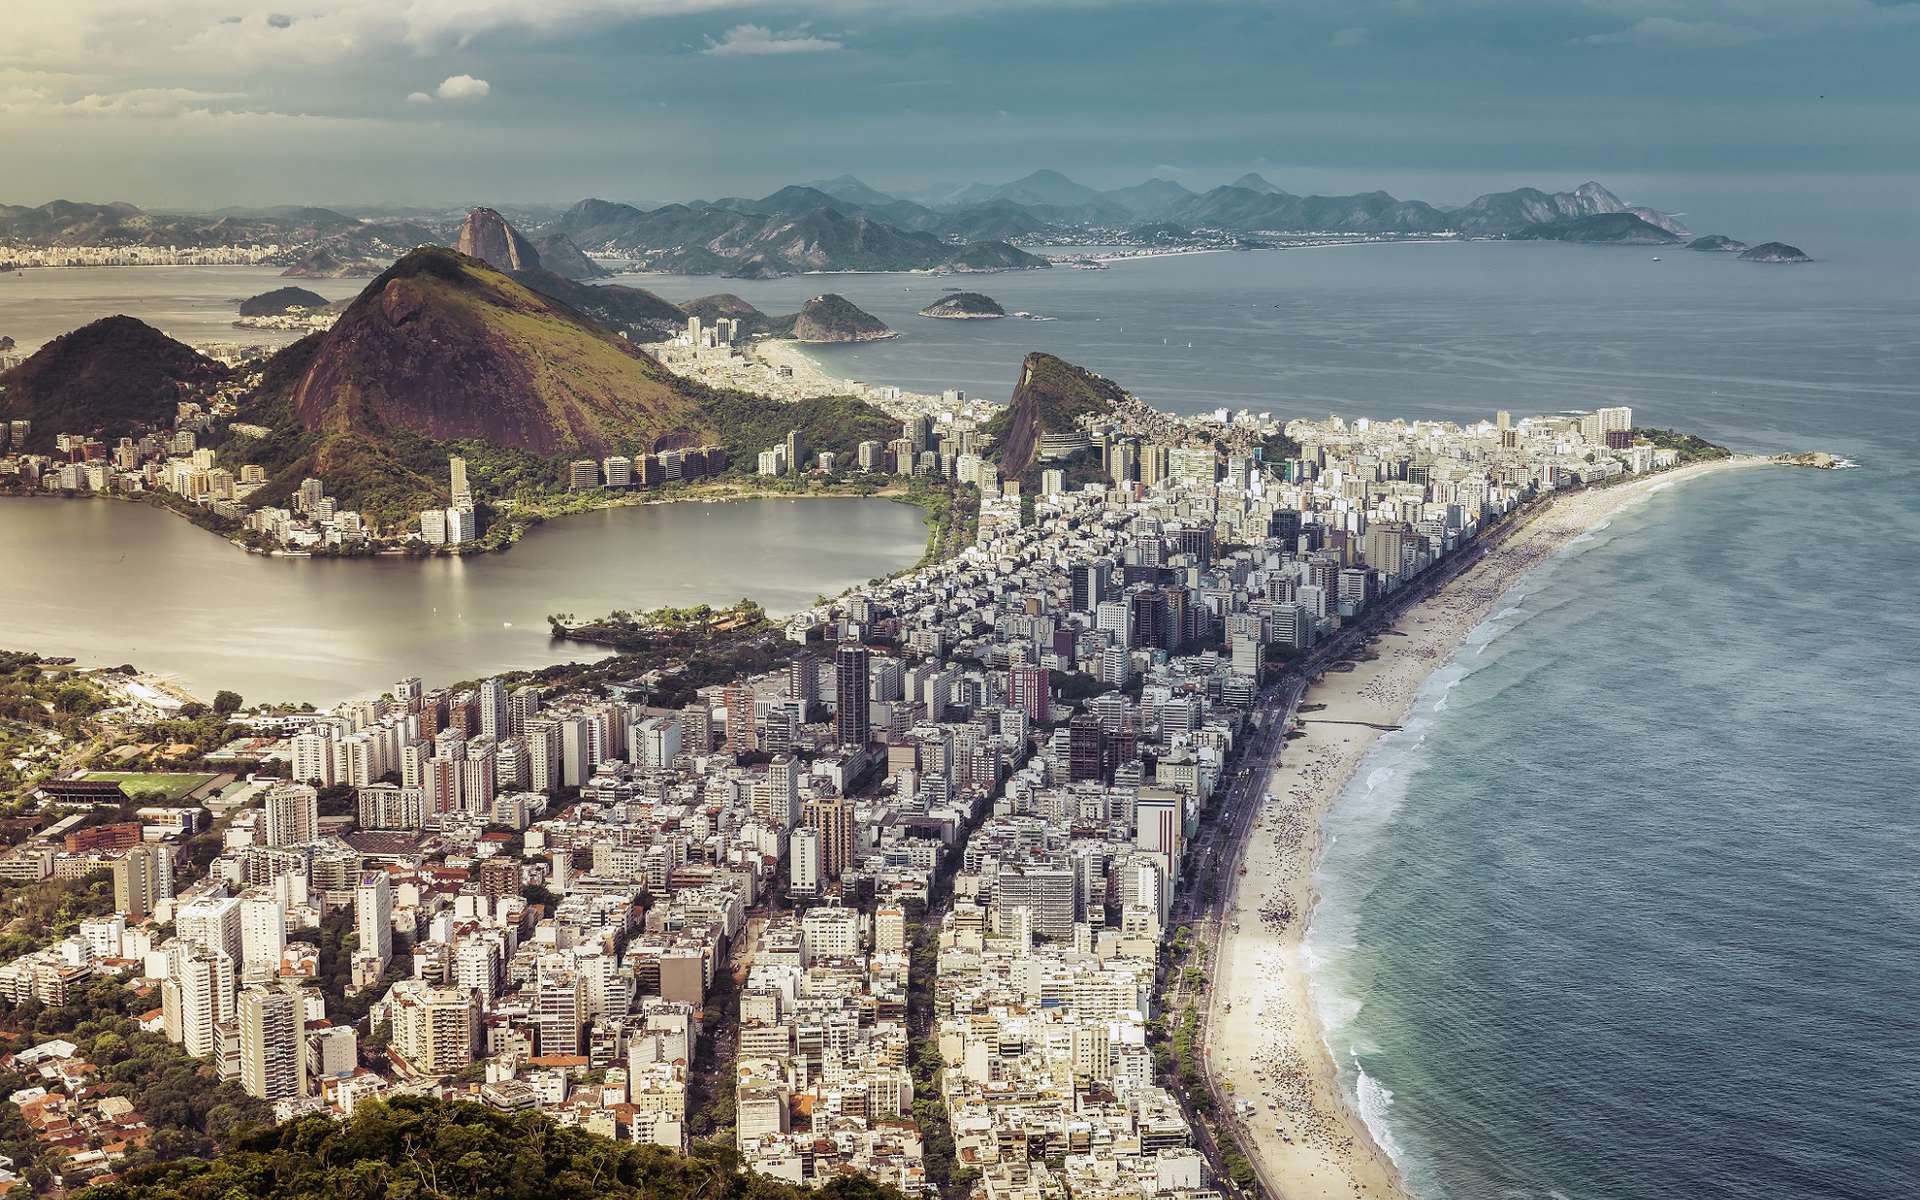 Rio de Janeiro est au cœur de l’épidémie de Zika. La ville peut-elle décemment accueillir 500.000 personnes du monde entier sans risque ? © marchello74, Shutterstock